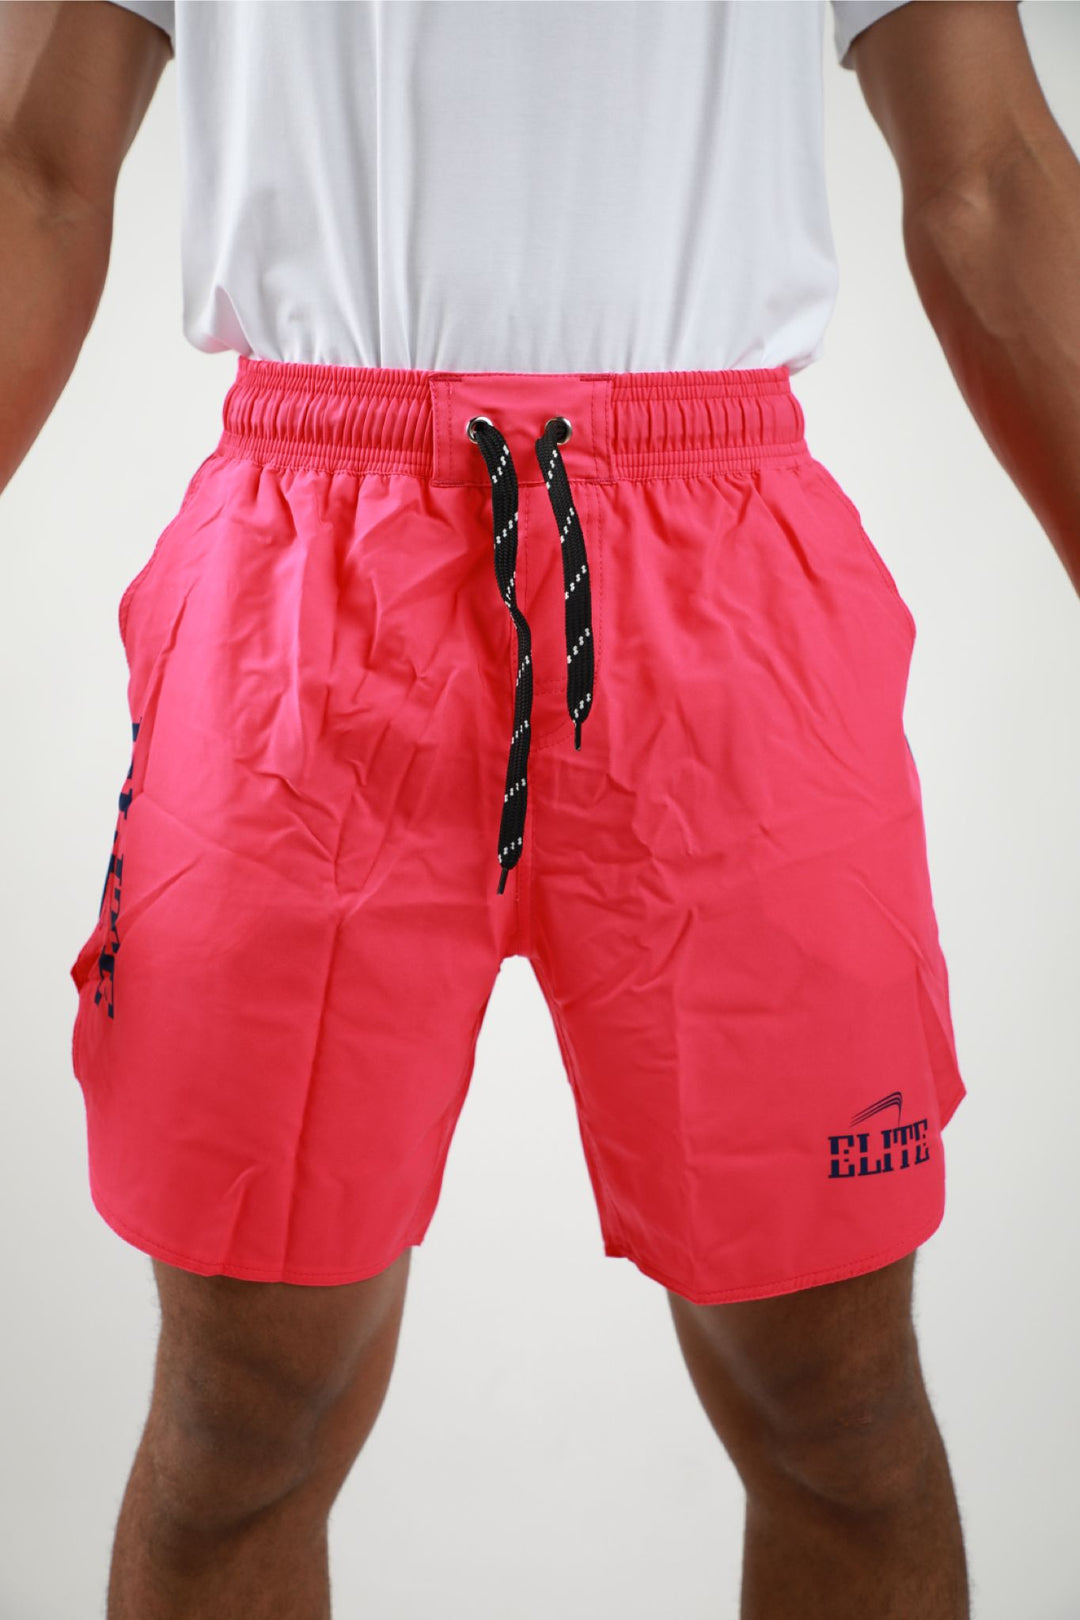 Elite Shorts  - Pink